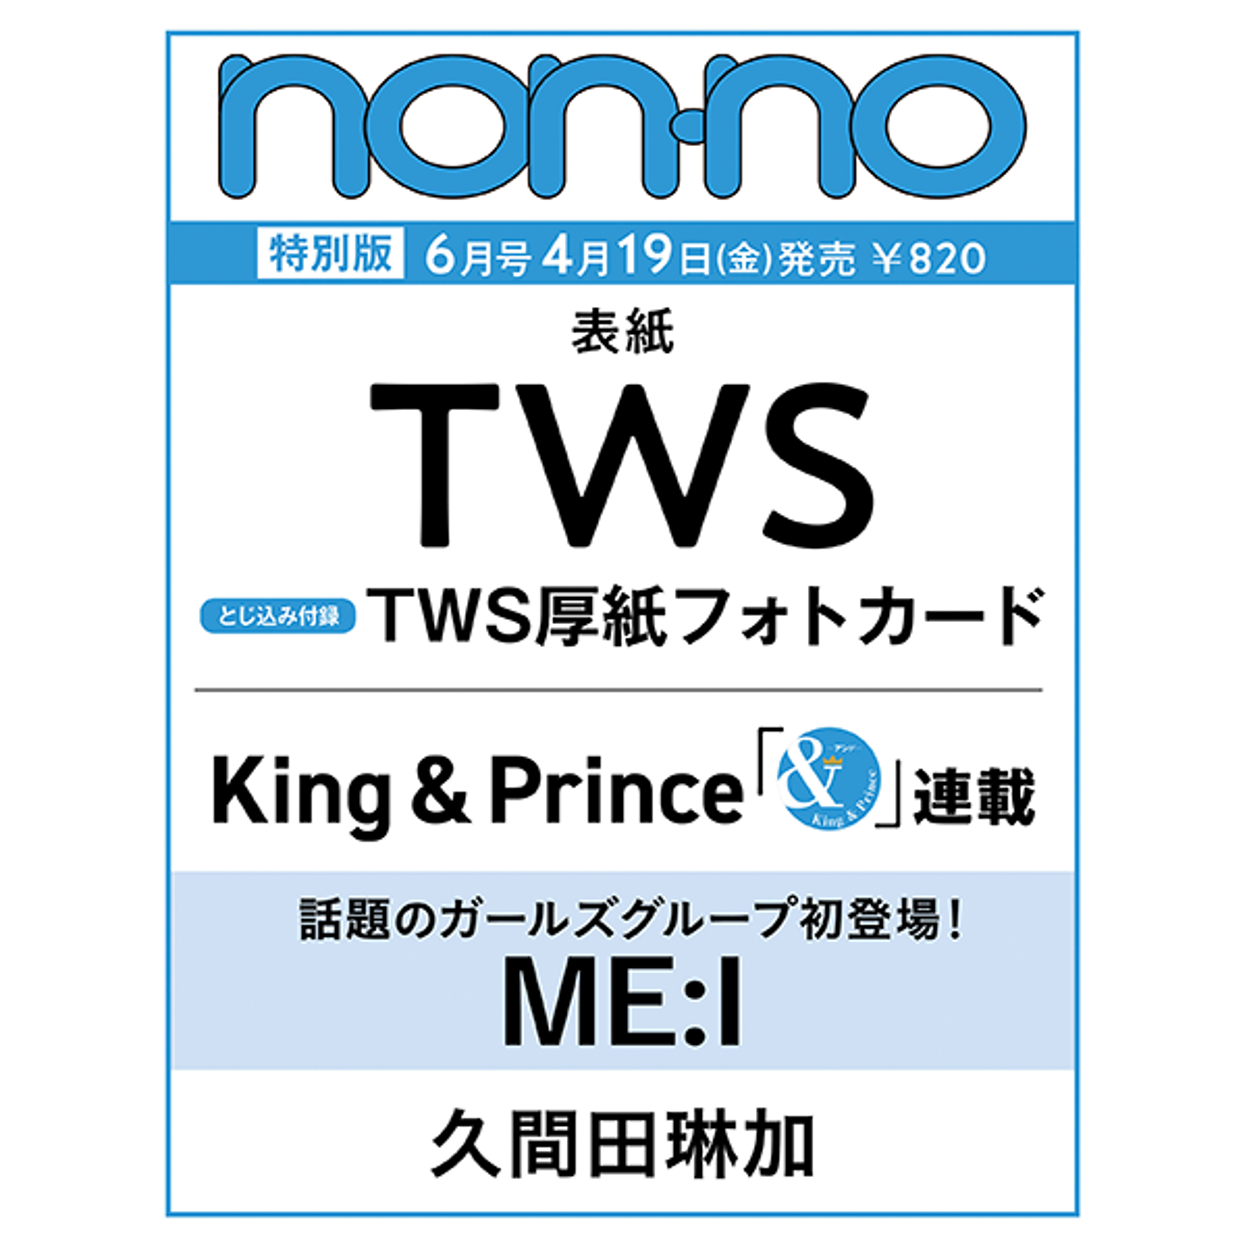 MEN&#039;S NON-NO メンズノンノ 06月号 special） 表紙:ツアーズ(TWS)) (日本の雑誌)